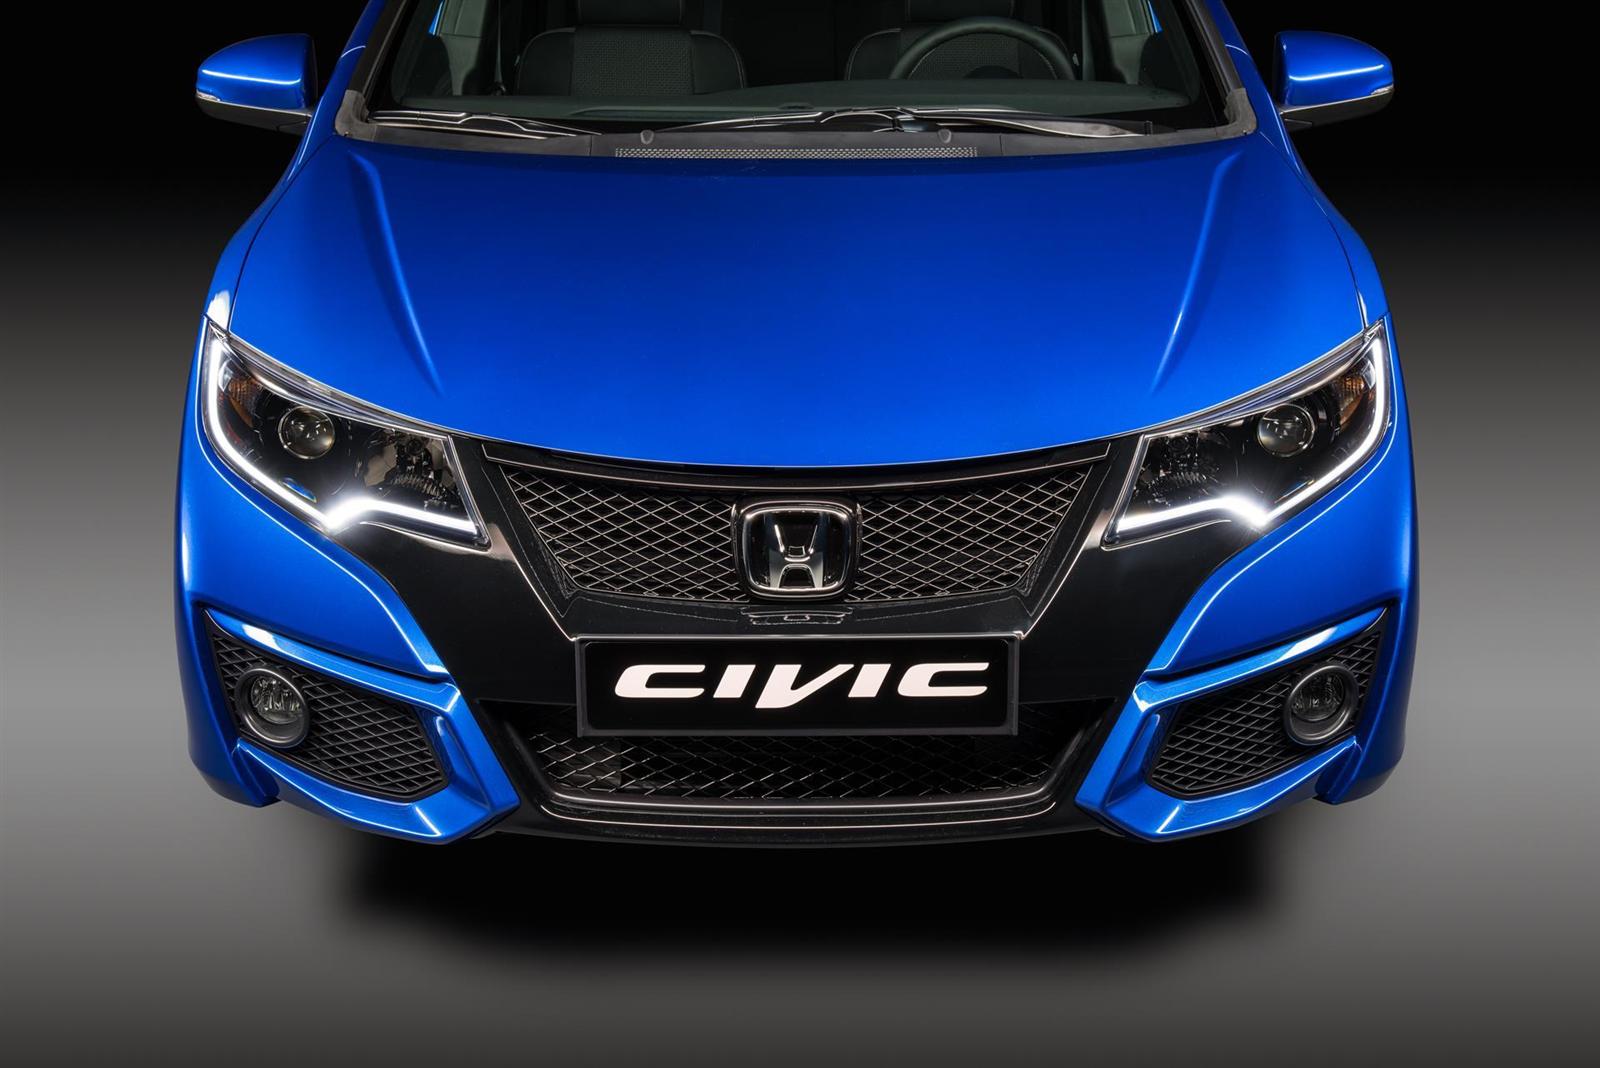 2014 Honda Civic Sport